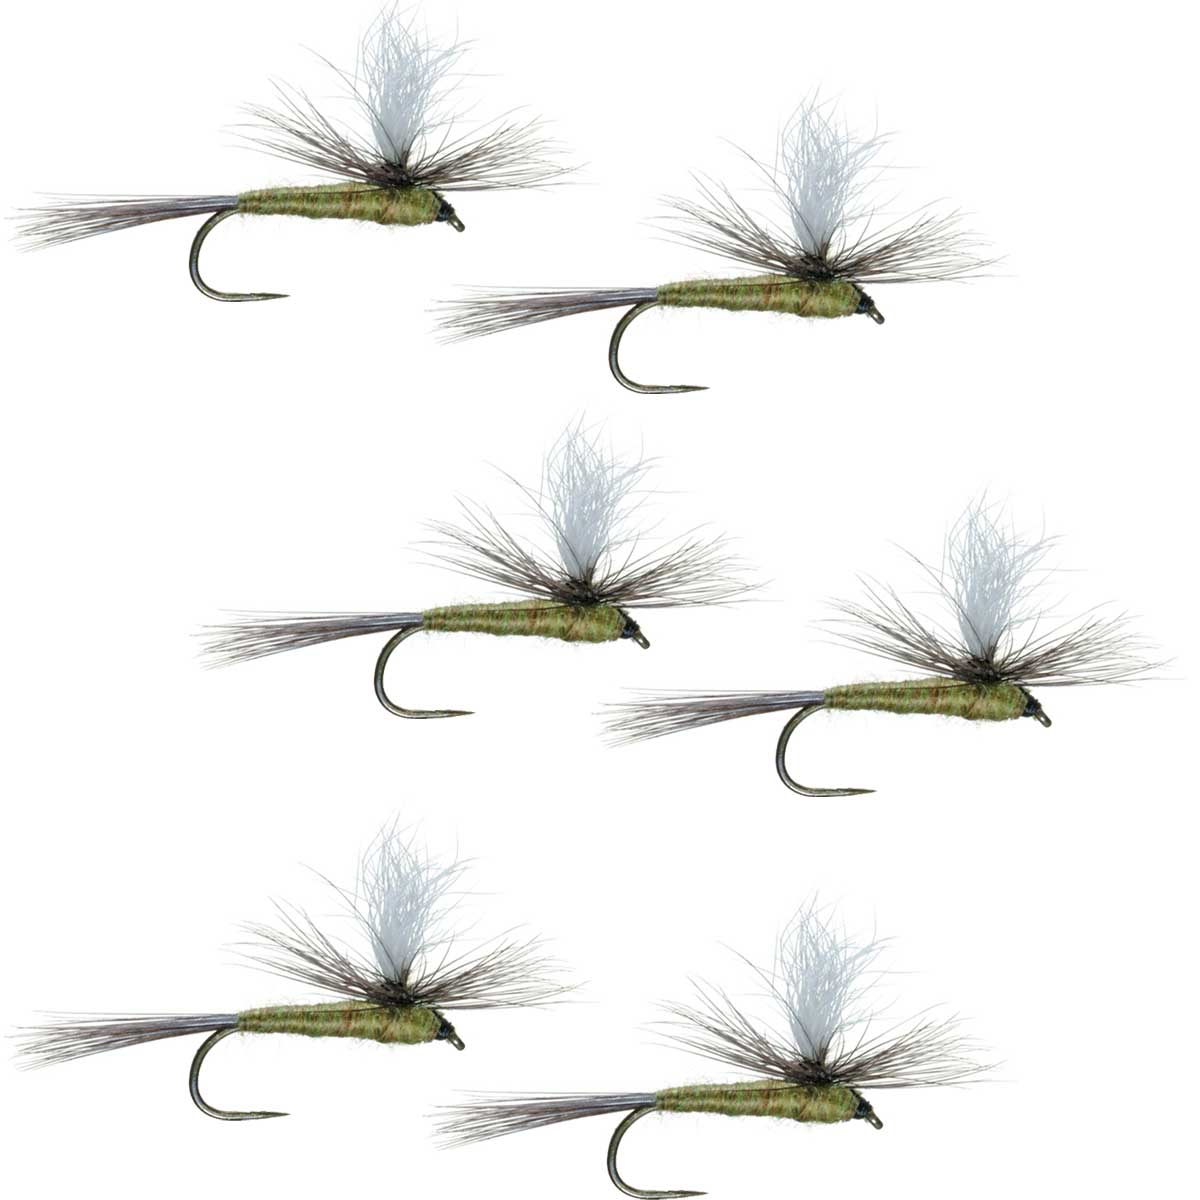 Moscas para pesca con mosca seca para trucha clásica BWO, paracaídas sin rebaba, con alas azules, color oliva, juego de 6 moscas, tamaño 18